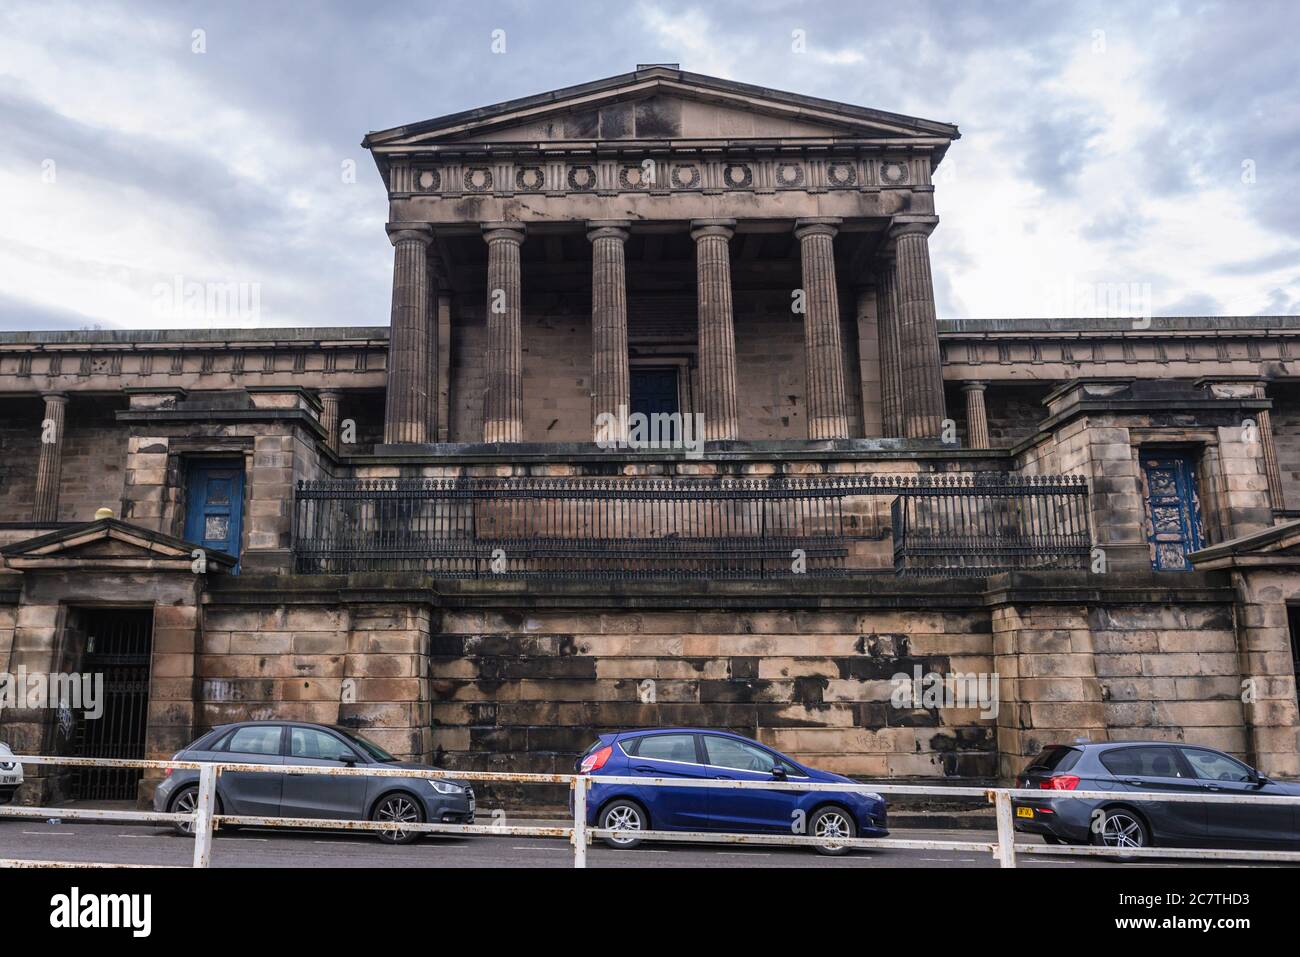 L'ancienne école secondaire royale a également appelé le nouveau Parlement à Édimbourg, la capitale de l'Écosse, une partie du Royaume-Uni Banque D'Images